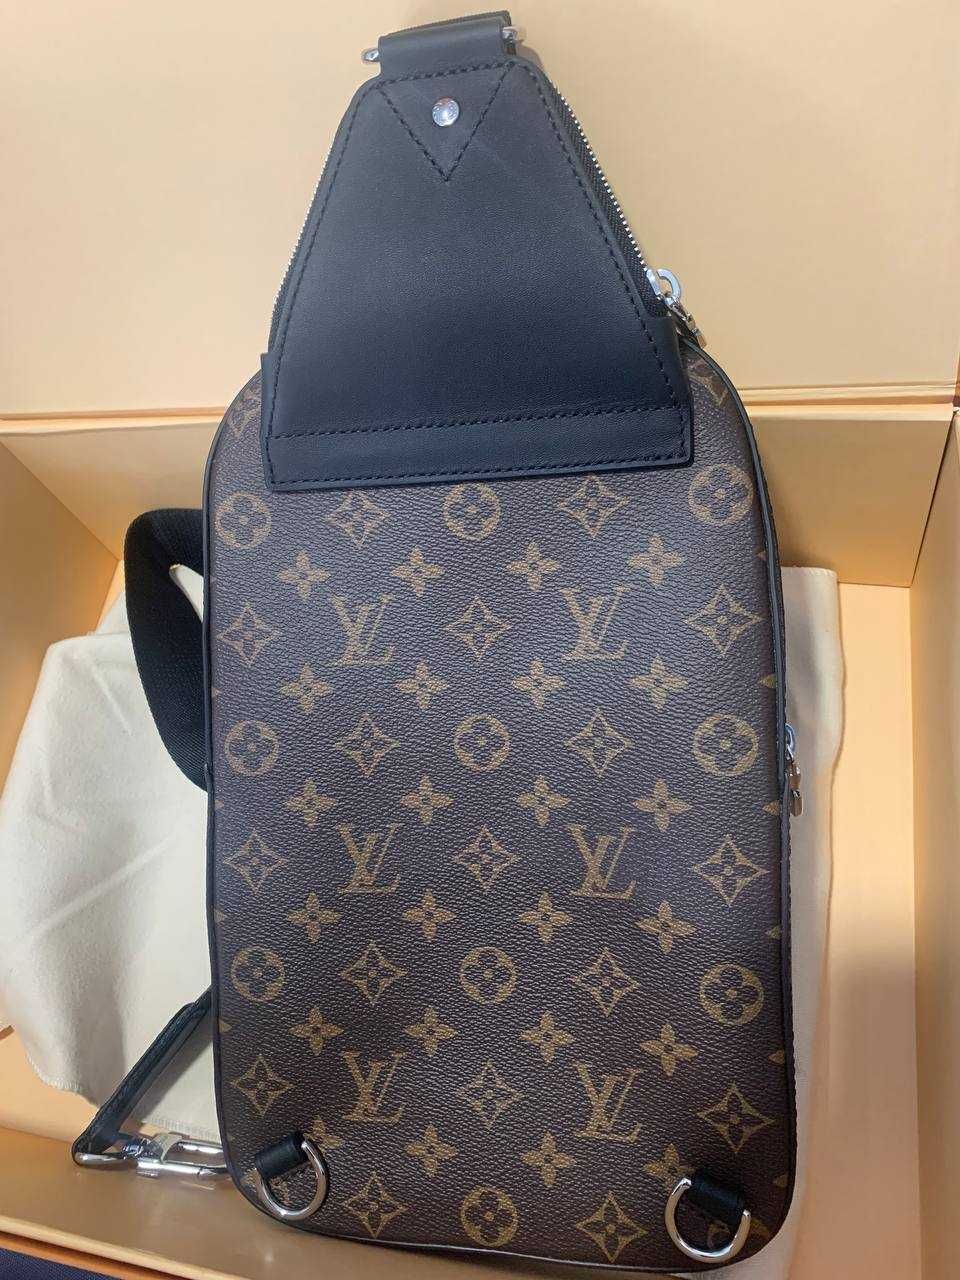 Мужская сумка Louis Vuitton Men's Messenger, оригинал с документами